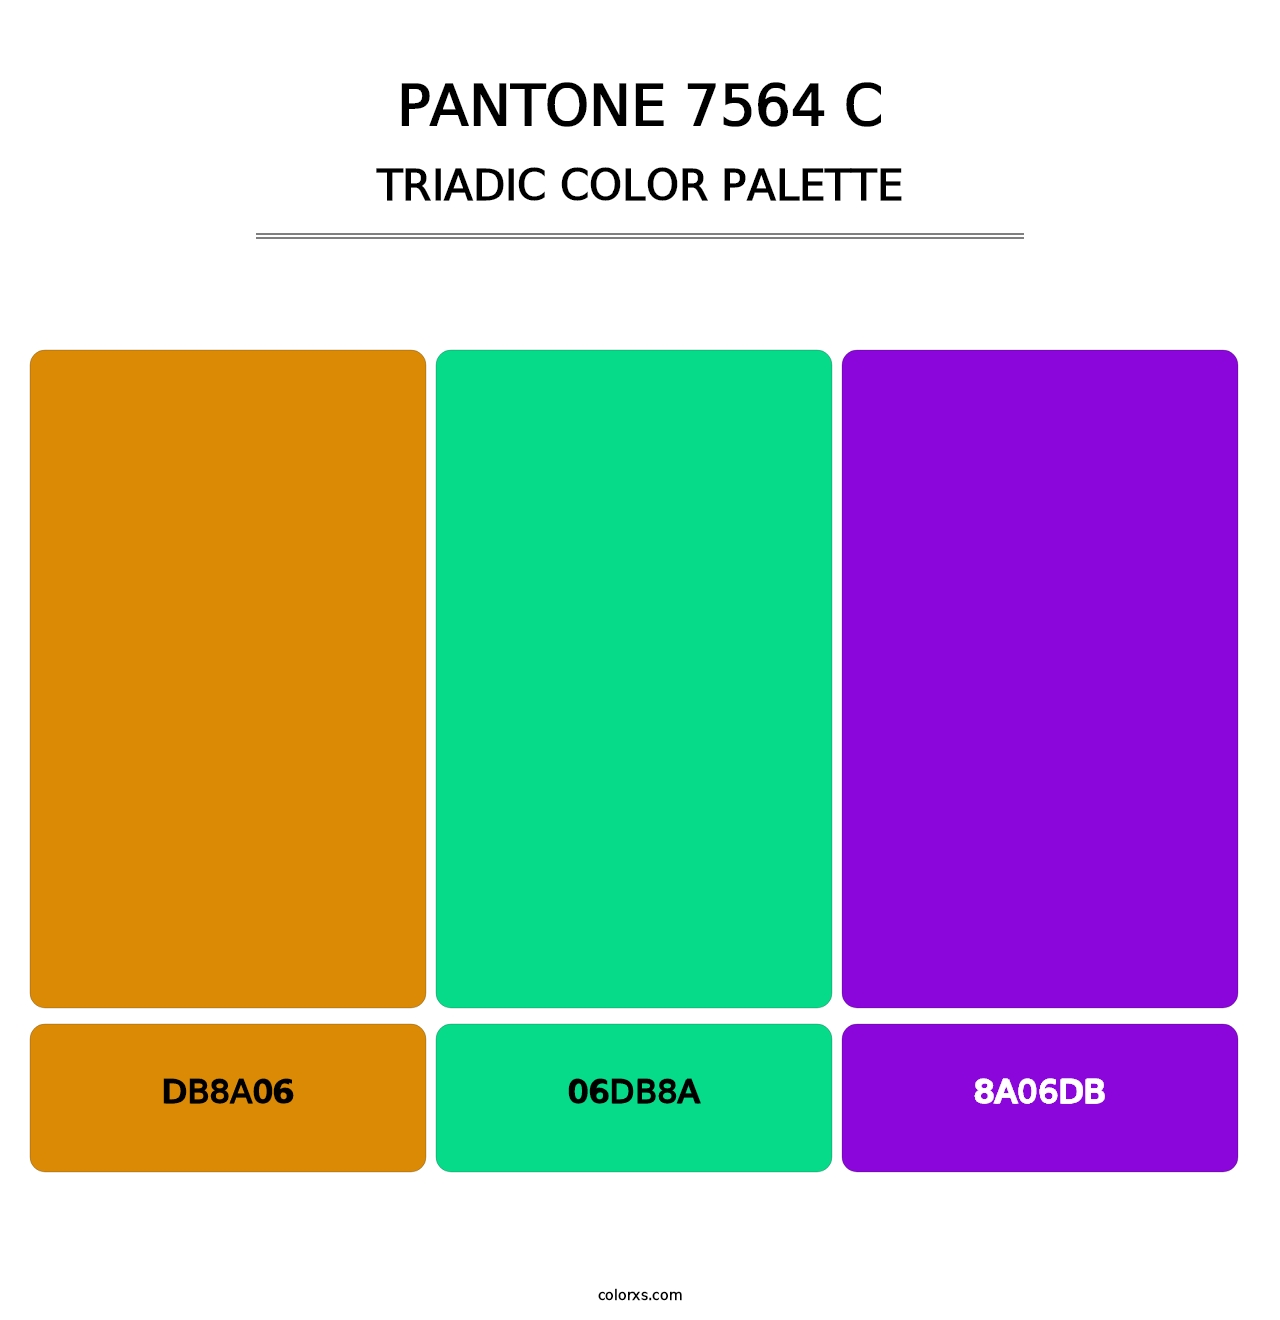 PANTONE 7564 C - Triadic Color Palette